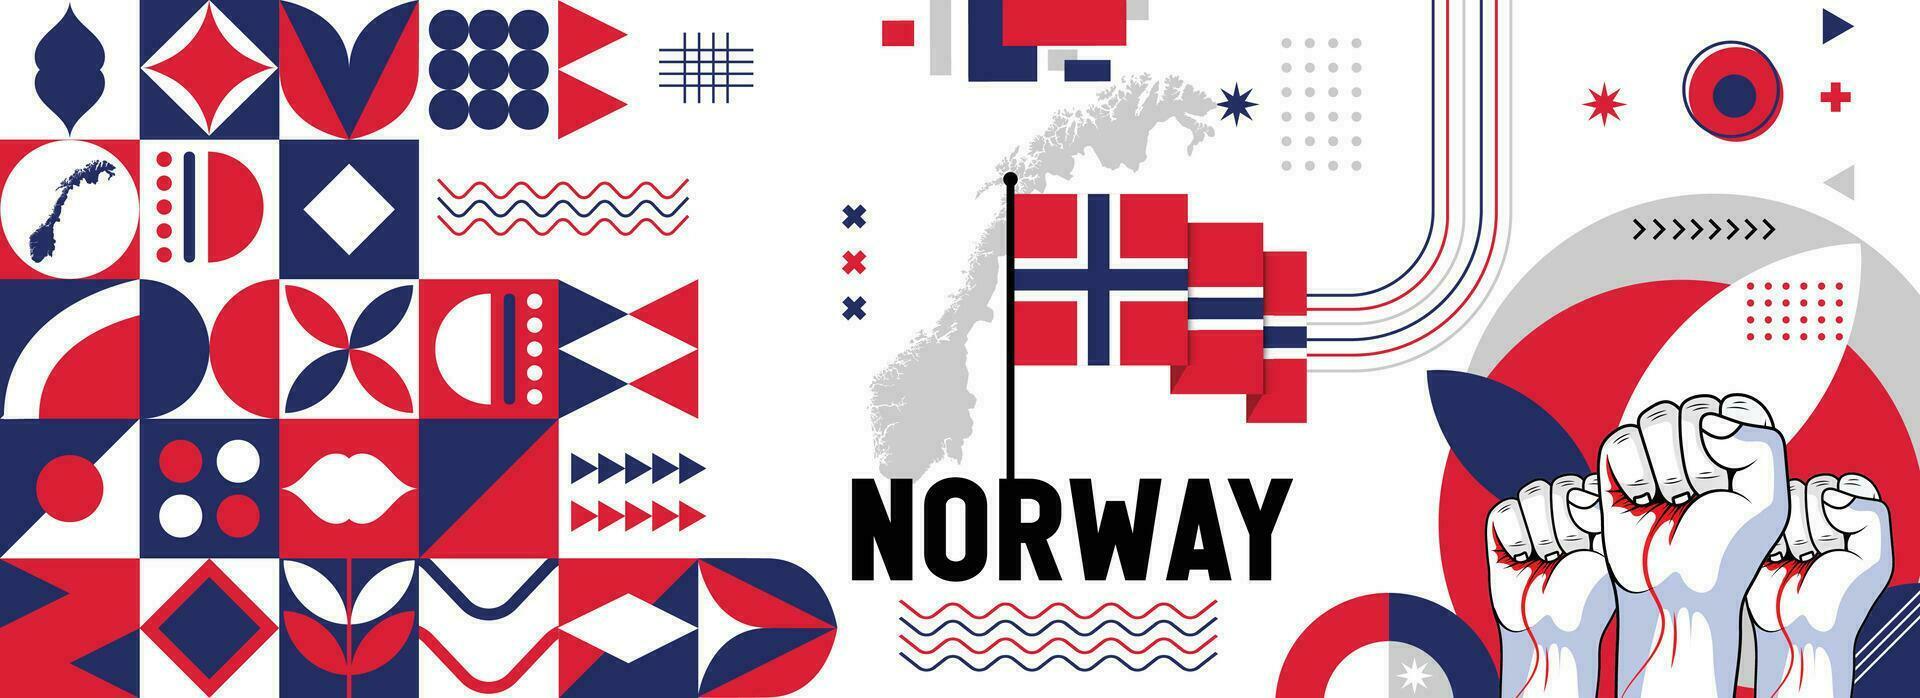 Norvegia nazionale o indipendenza giorno bandiera per nazione celebrazione. bandiera e carta geografica di Norvegia con sollevato pugni. moderno retrò design con typorgaphy astratto geometrico icone. vettore illustrazione